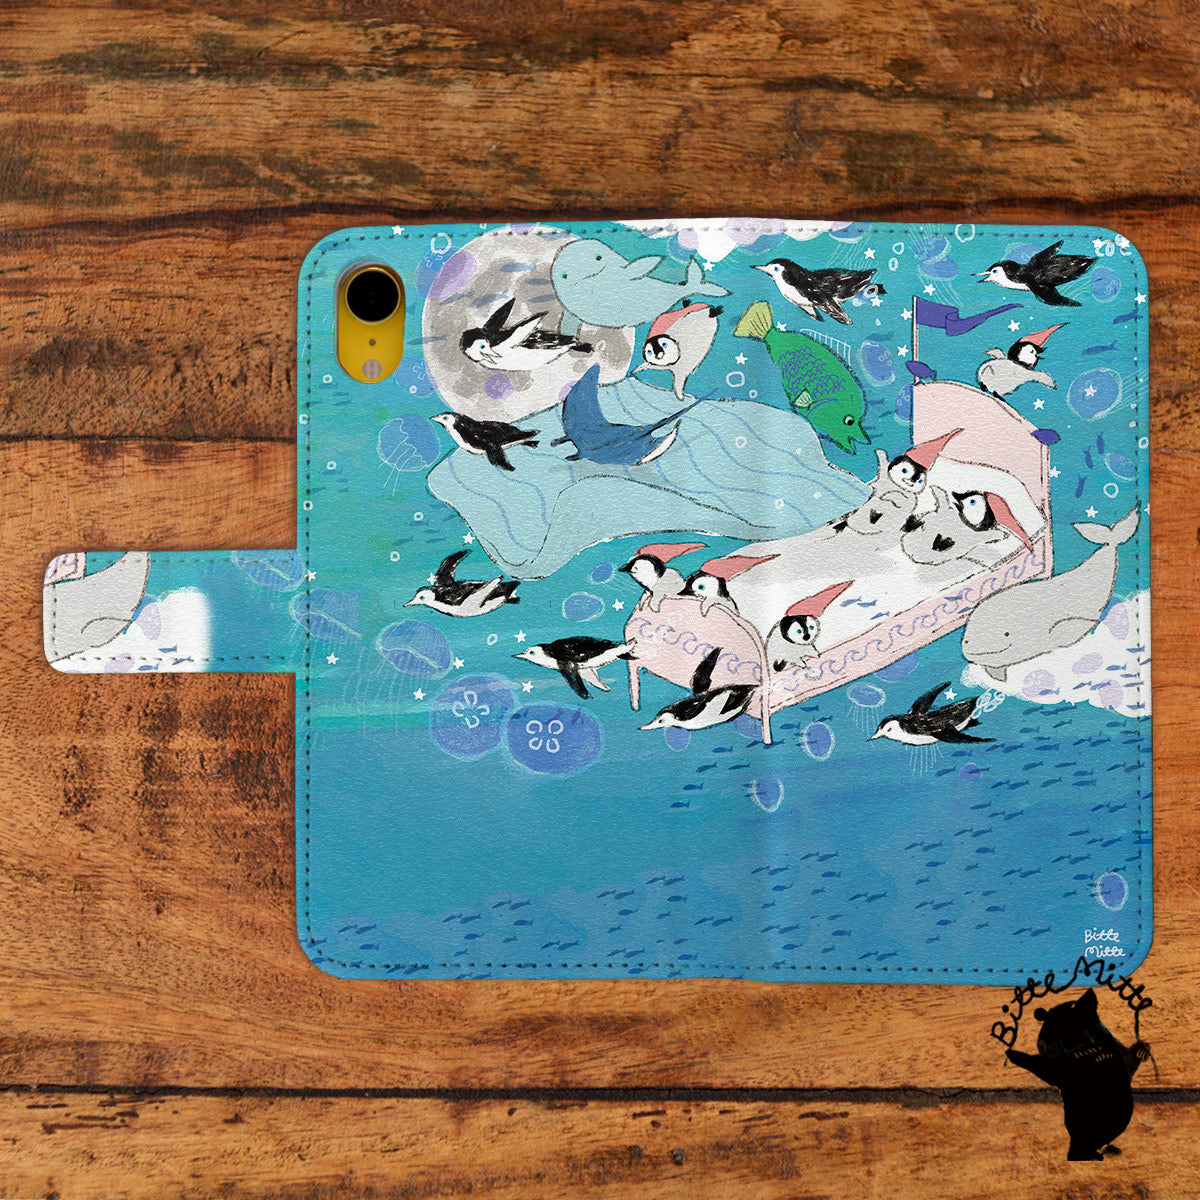 Bitte Mitte!ブランドのデザイン画を印刷したはめ込み式手帳型スマホケース「海の中でおやすみ」のイメージ写真です。機種はiPhoneXRです。